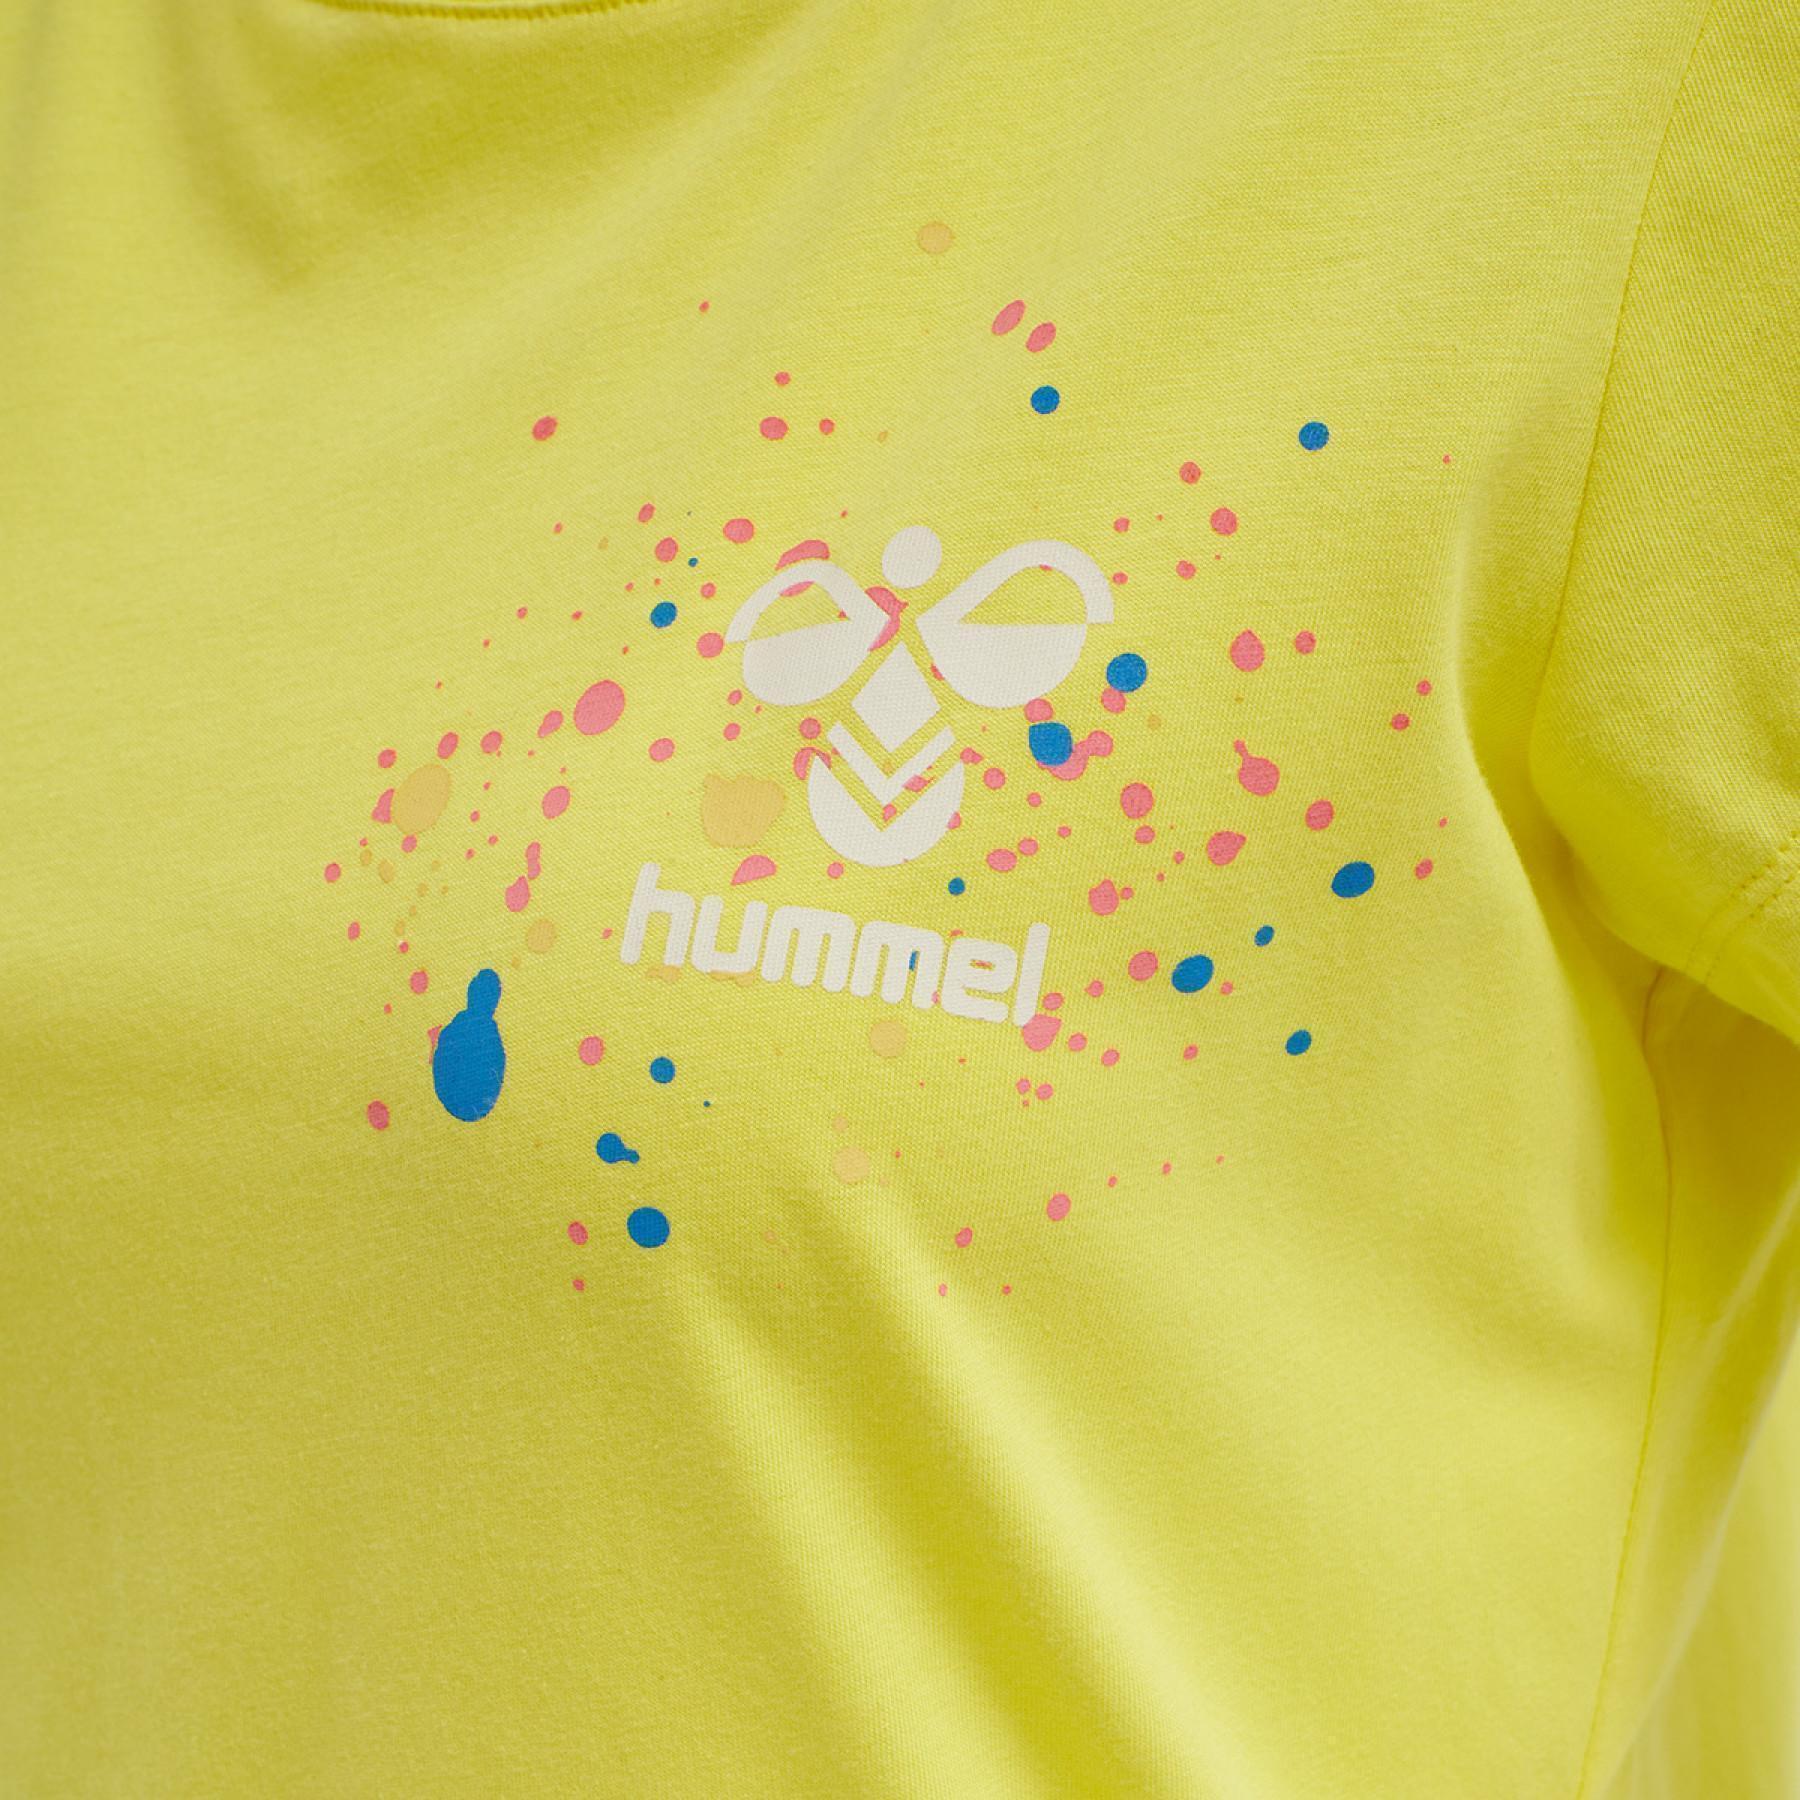 T-shirt för kvinnor Hummel hmlspring